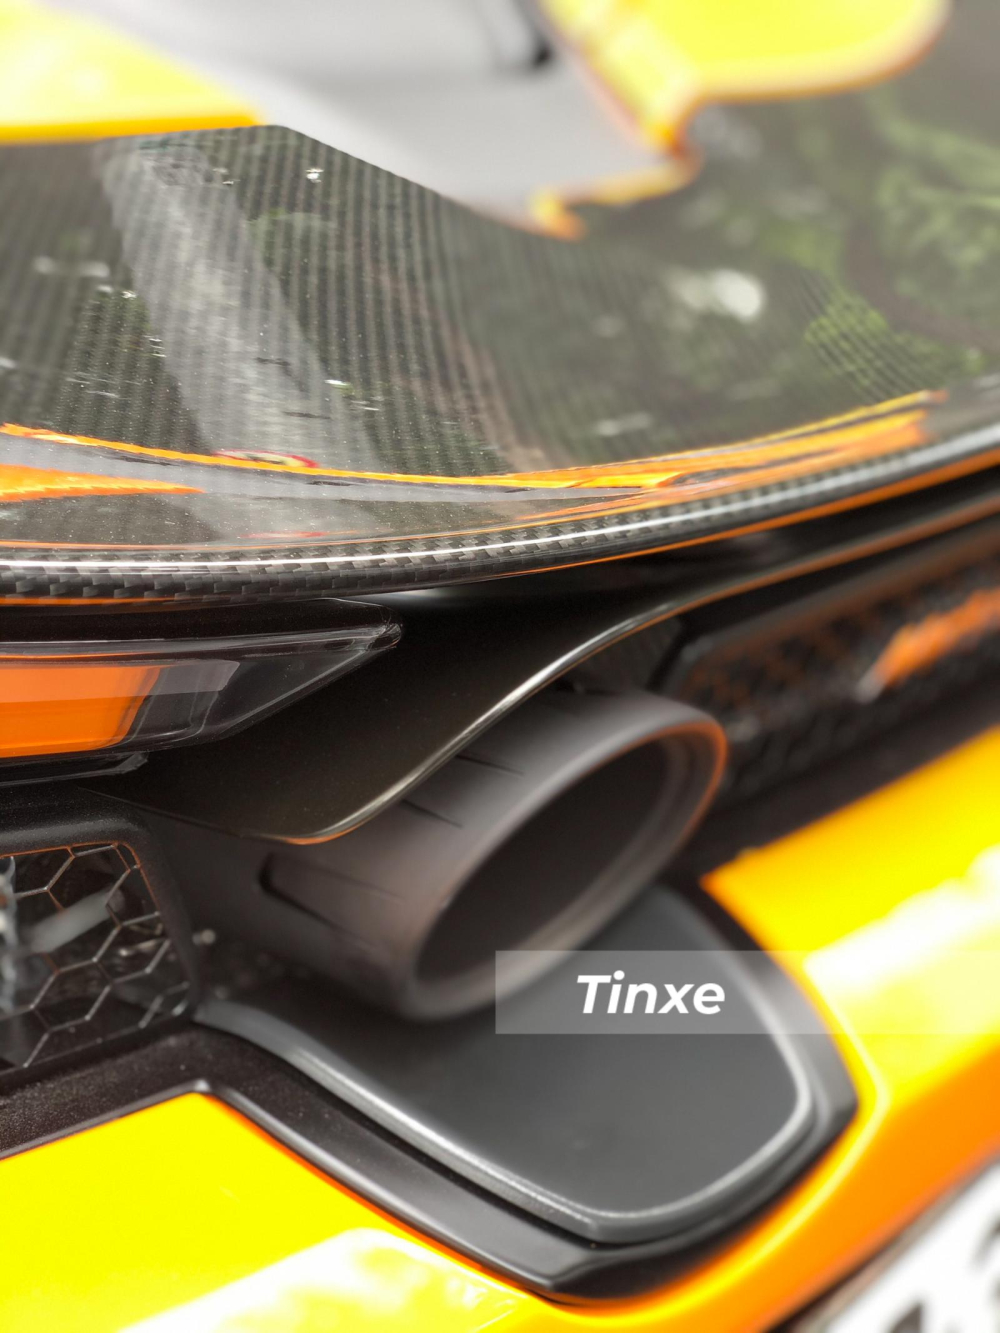 Sức mạnh được truyền tới bánh thông qua hộp số tự động tuần tự 7 cấp, nhờ đó, phiên bản mui trần của McLaren 720S có khả năng tăng tốc từ vị trí xuất phát lên 100 km/h trong thời gian 2,9 giây trước khi đạt vận tốc tối đa 341 km/h khi đóng mui.